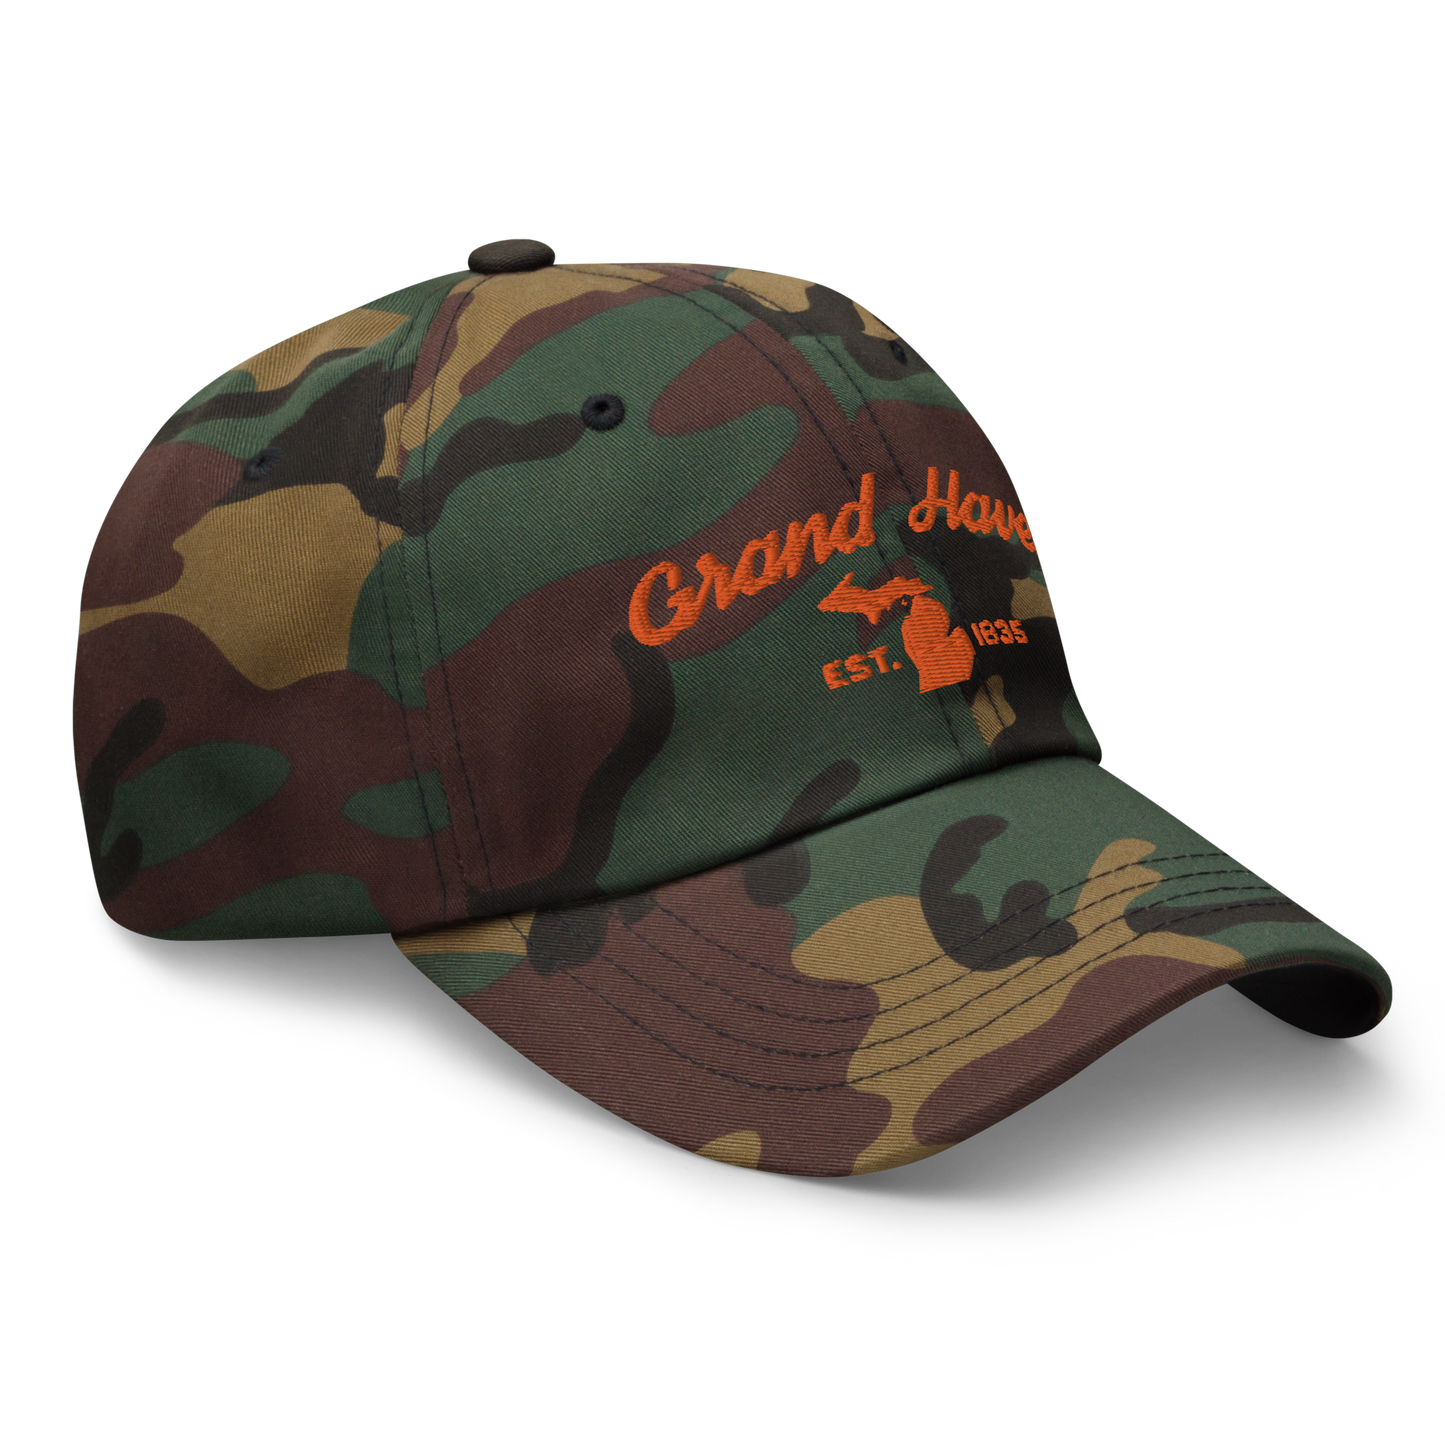 'Grand Haven EST. 1835' Camouflage Cap (Script Font)